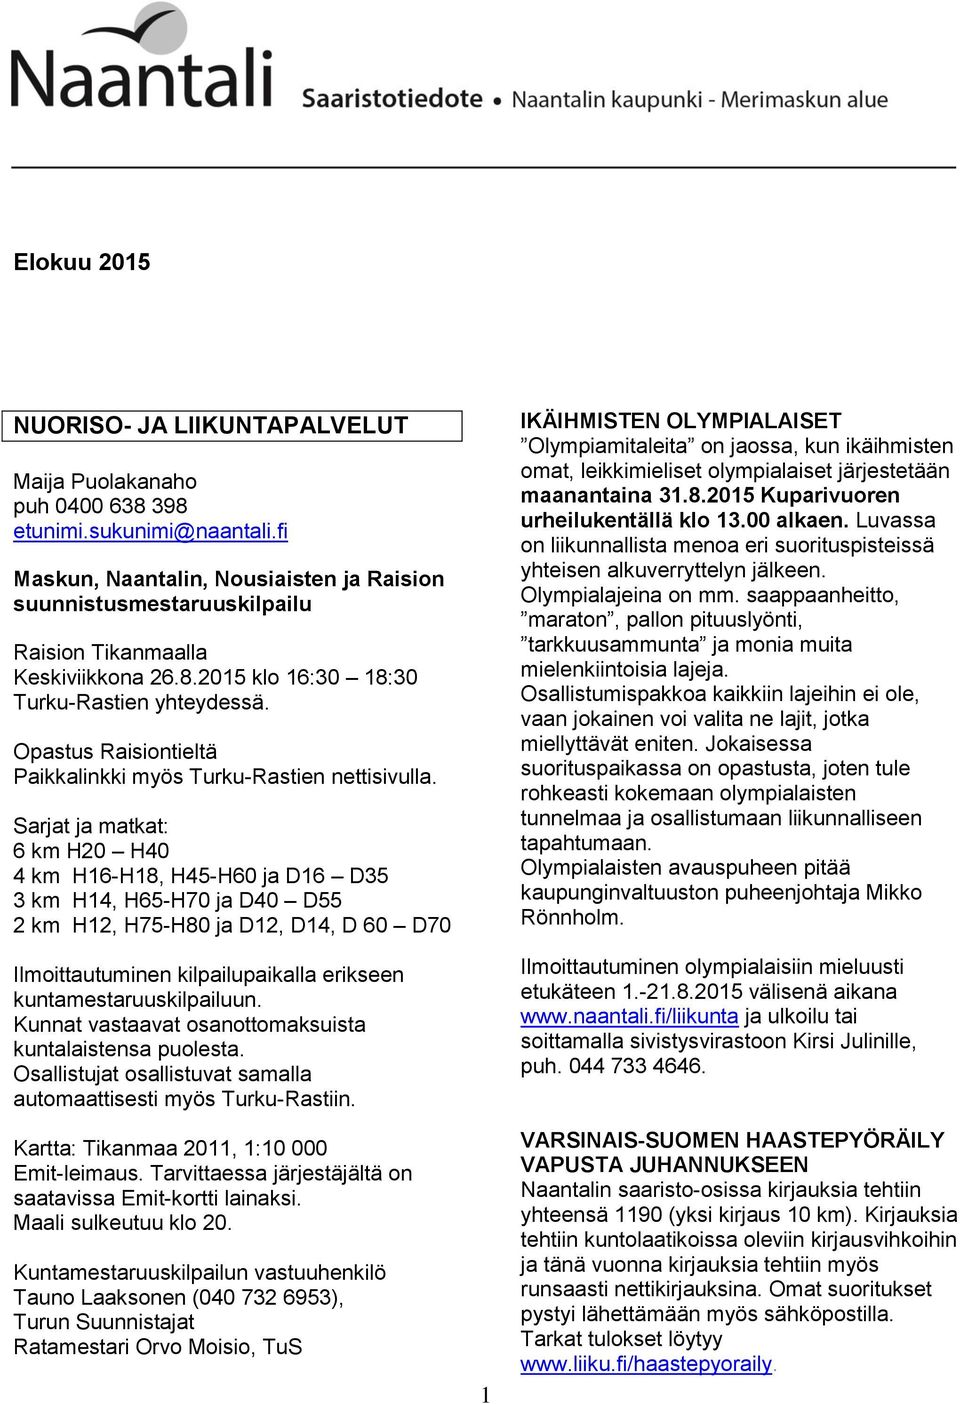 Opastus Raisiontieltä Paikkalinkki myös Turku-Rastien nettisivulla.